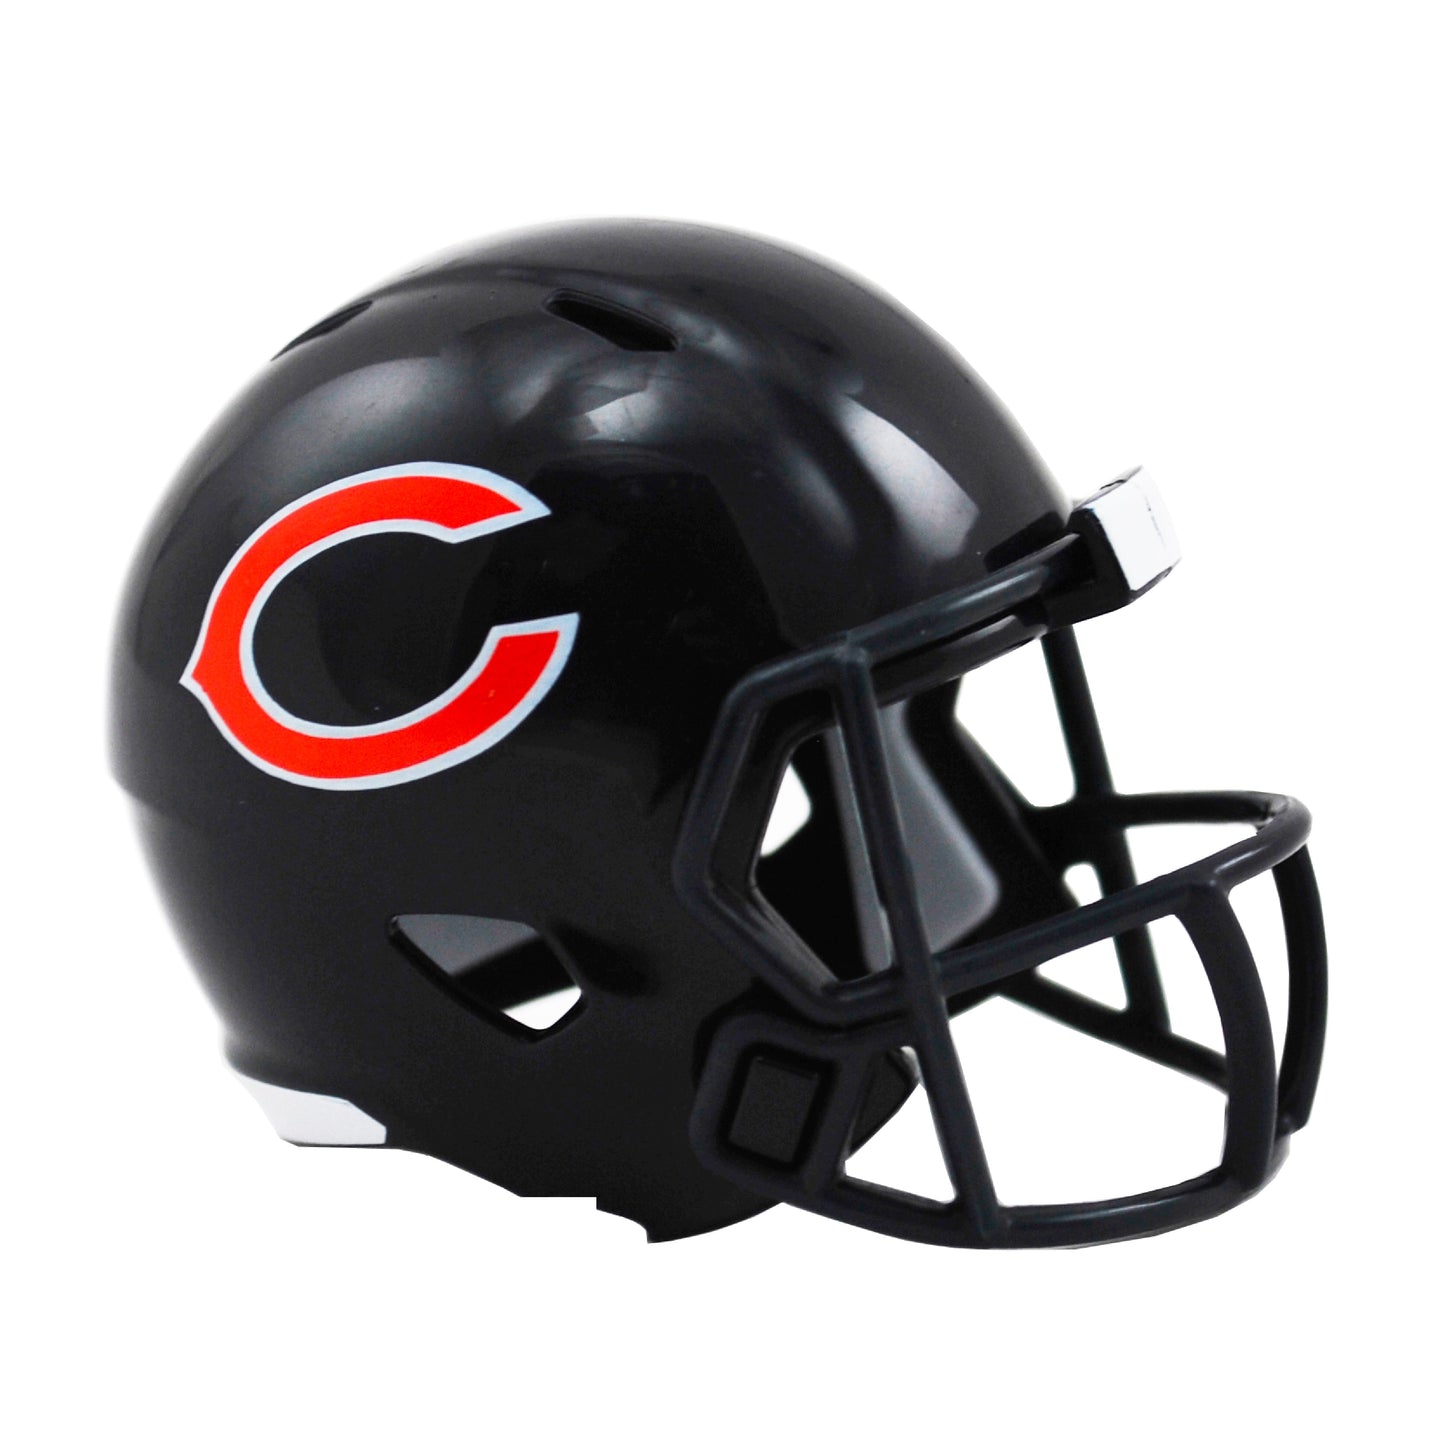 Chicago Bears Riddell Speed Pocket Pro Football Helmet